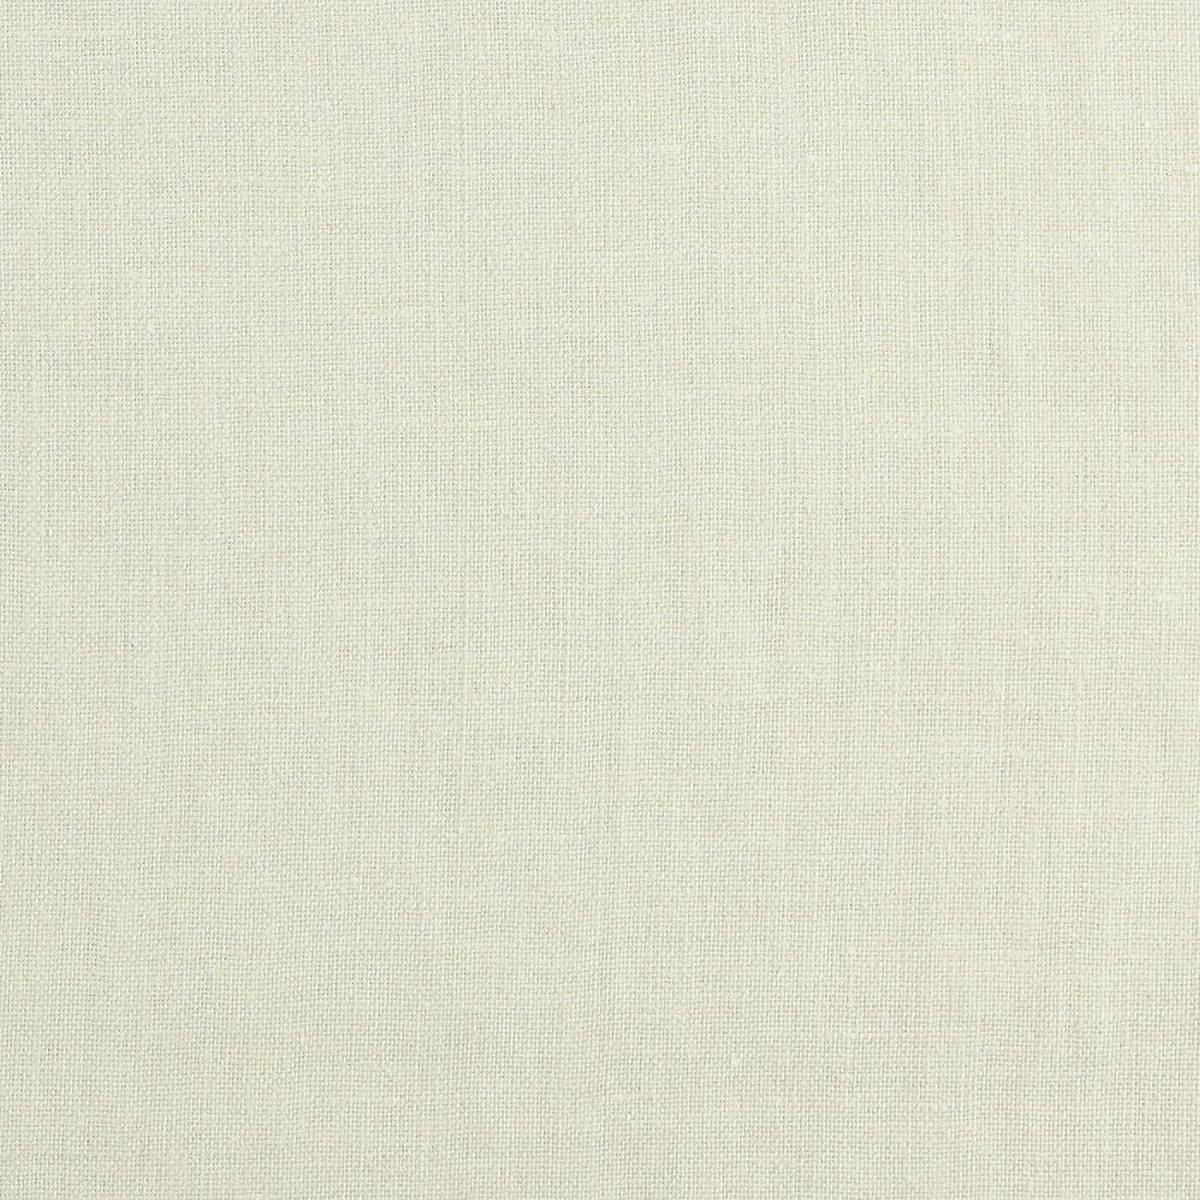 Bray White Clay Fabric by Zoffany